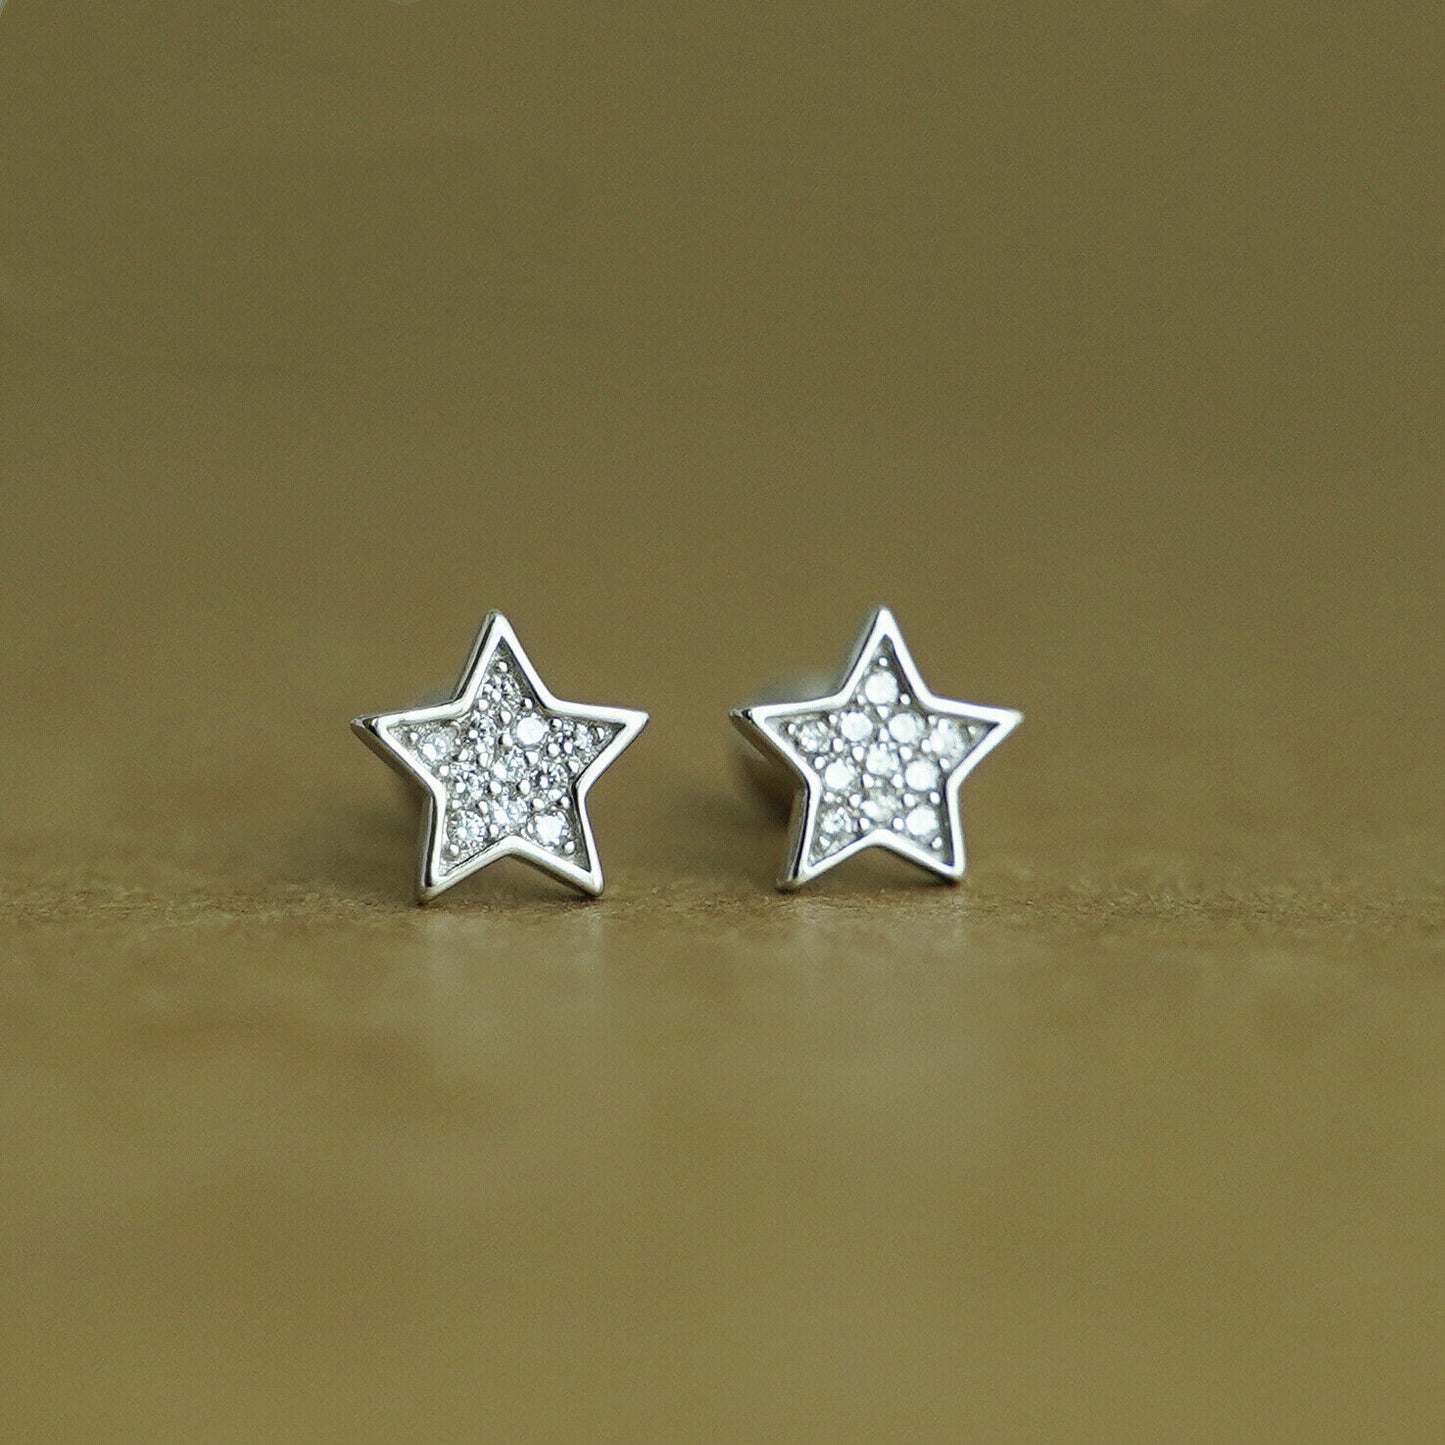 925 Sterling Silver Cubic Zirconia Star Stud Earrings with Screw Back - sugarkittenlondon